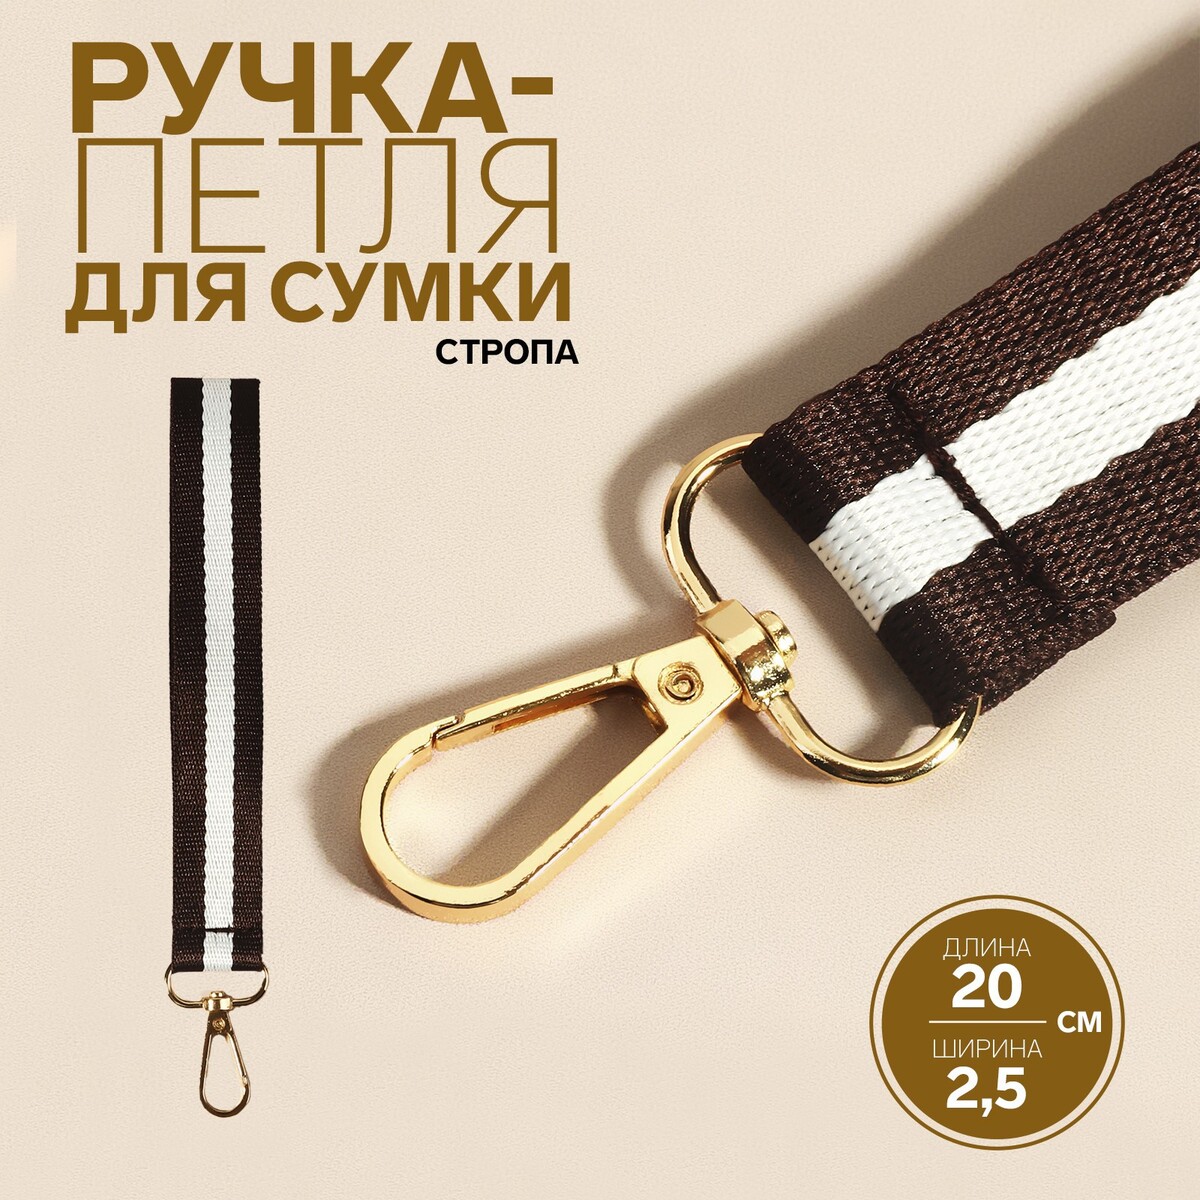 Ручка-петля для сумки, стропа, 20 × 2,5 см, цвет коричневый/белый петля гаражная 20х100 мм